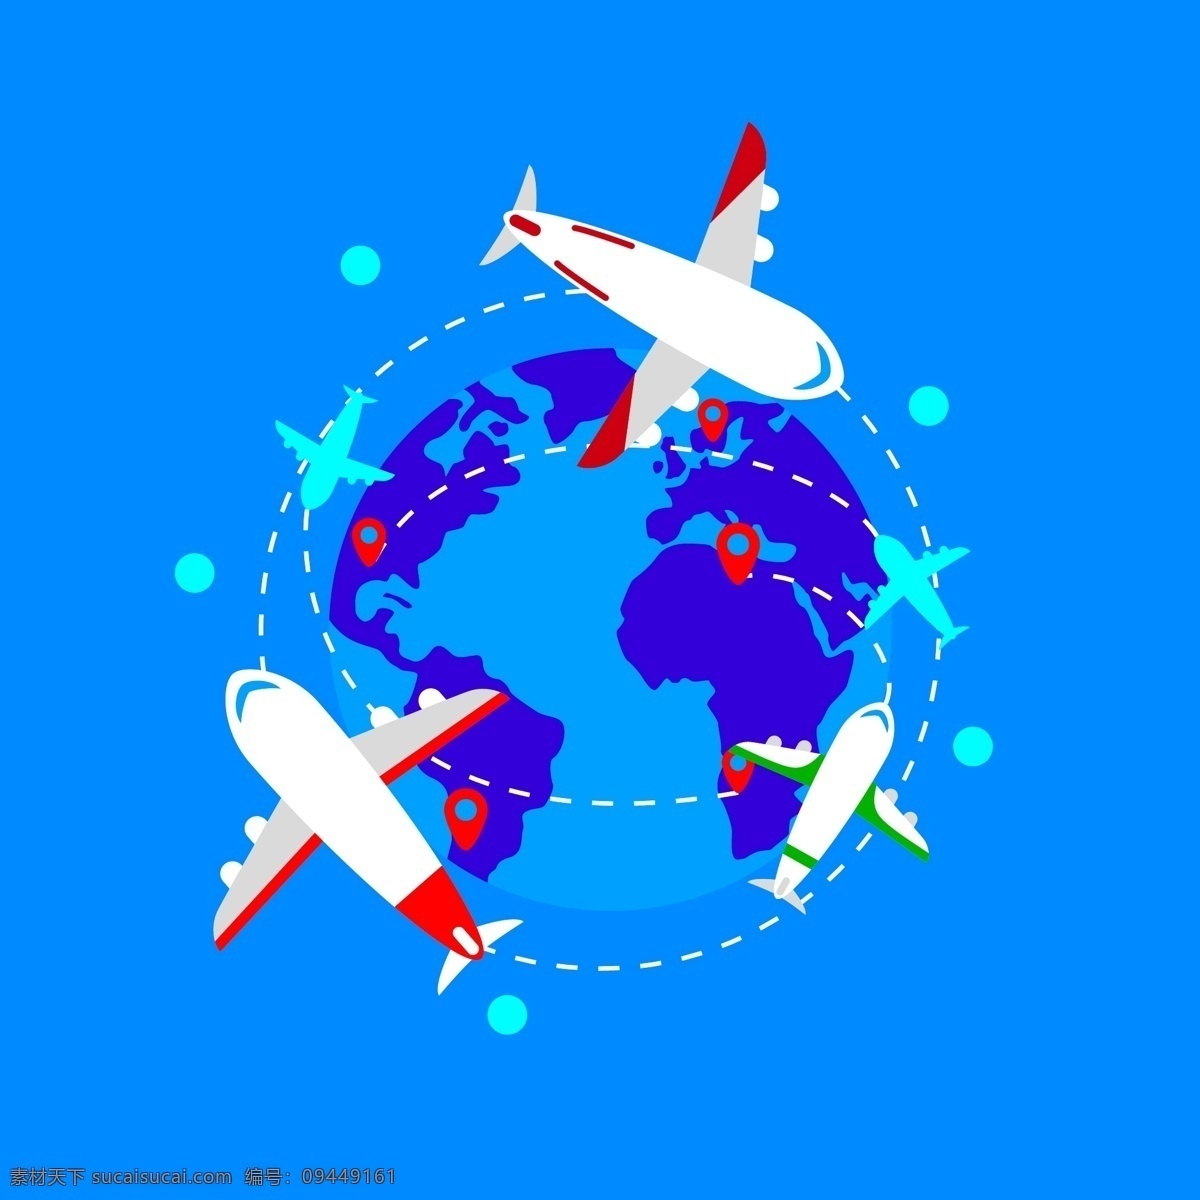 环球飞行飞机 旅行插画 世界地图 航空公司插画 环球 飞行 飞机 矢量 青色 天蓝色